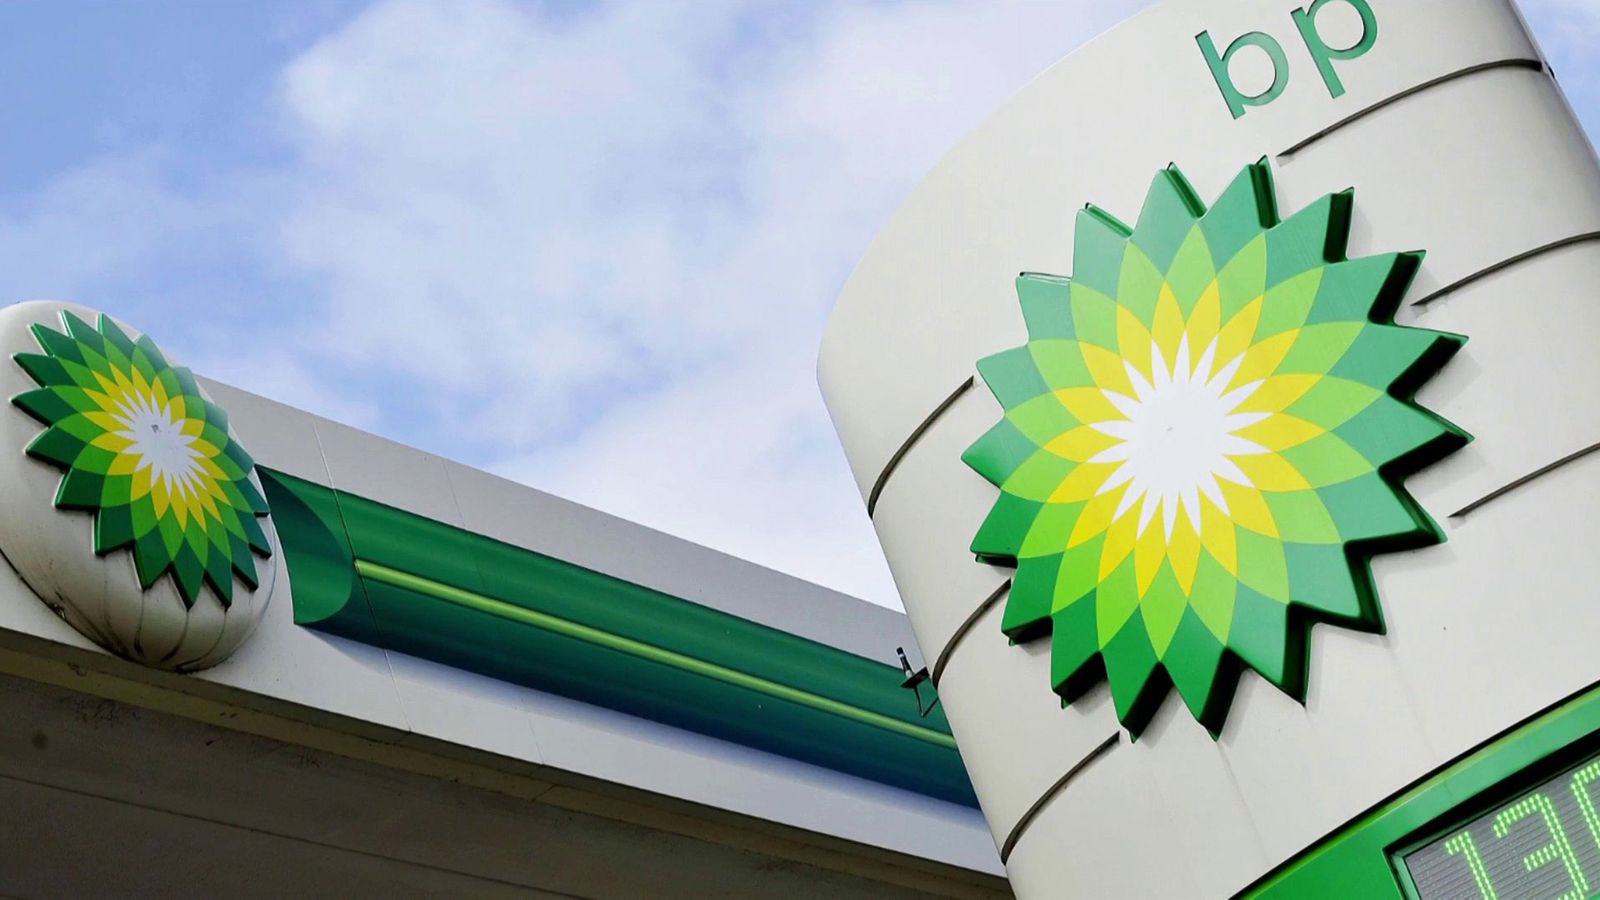 Нетни печалби от £2 милиарда за BP между април и юни - но това е рязък спад спрямо предходната година